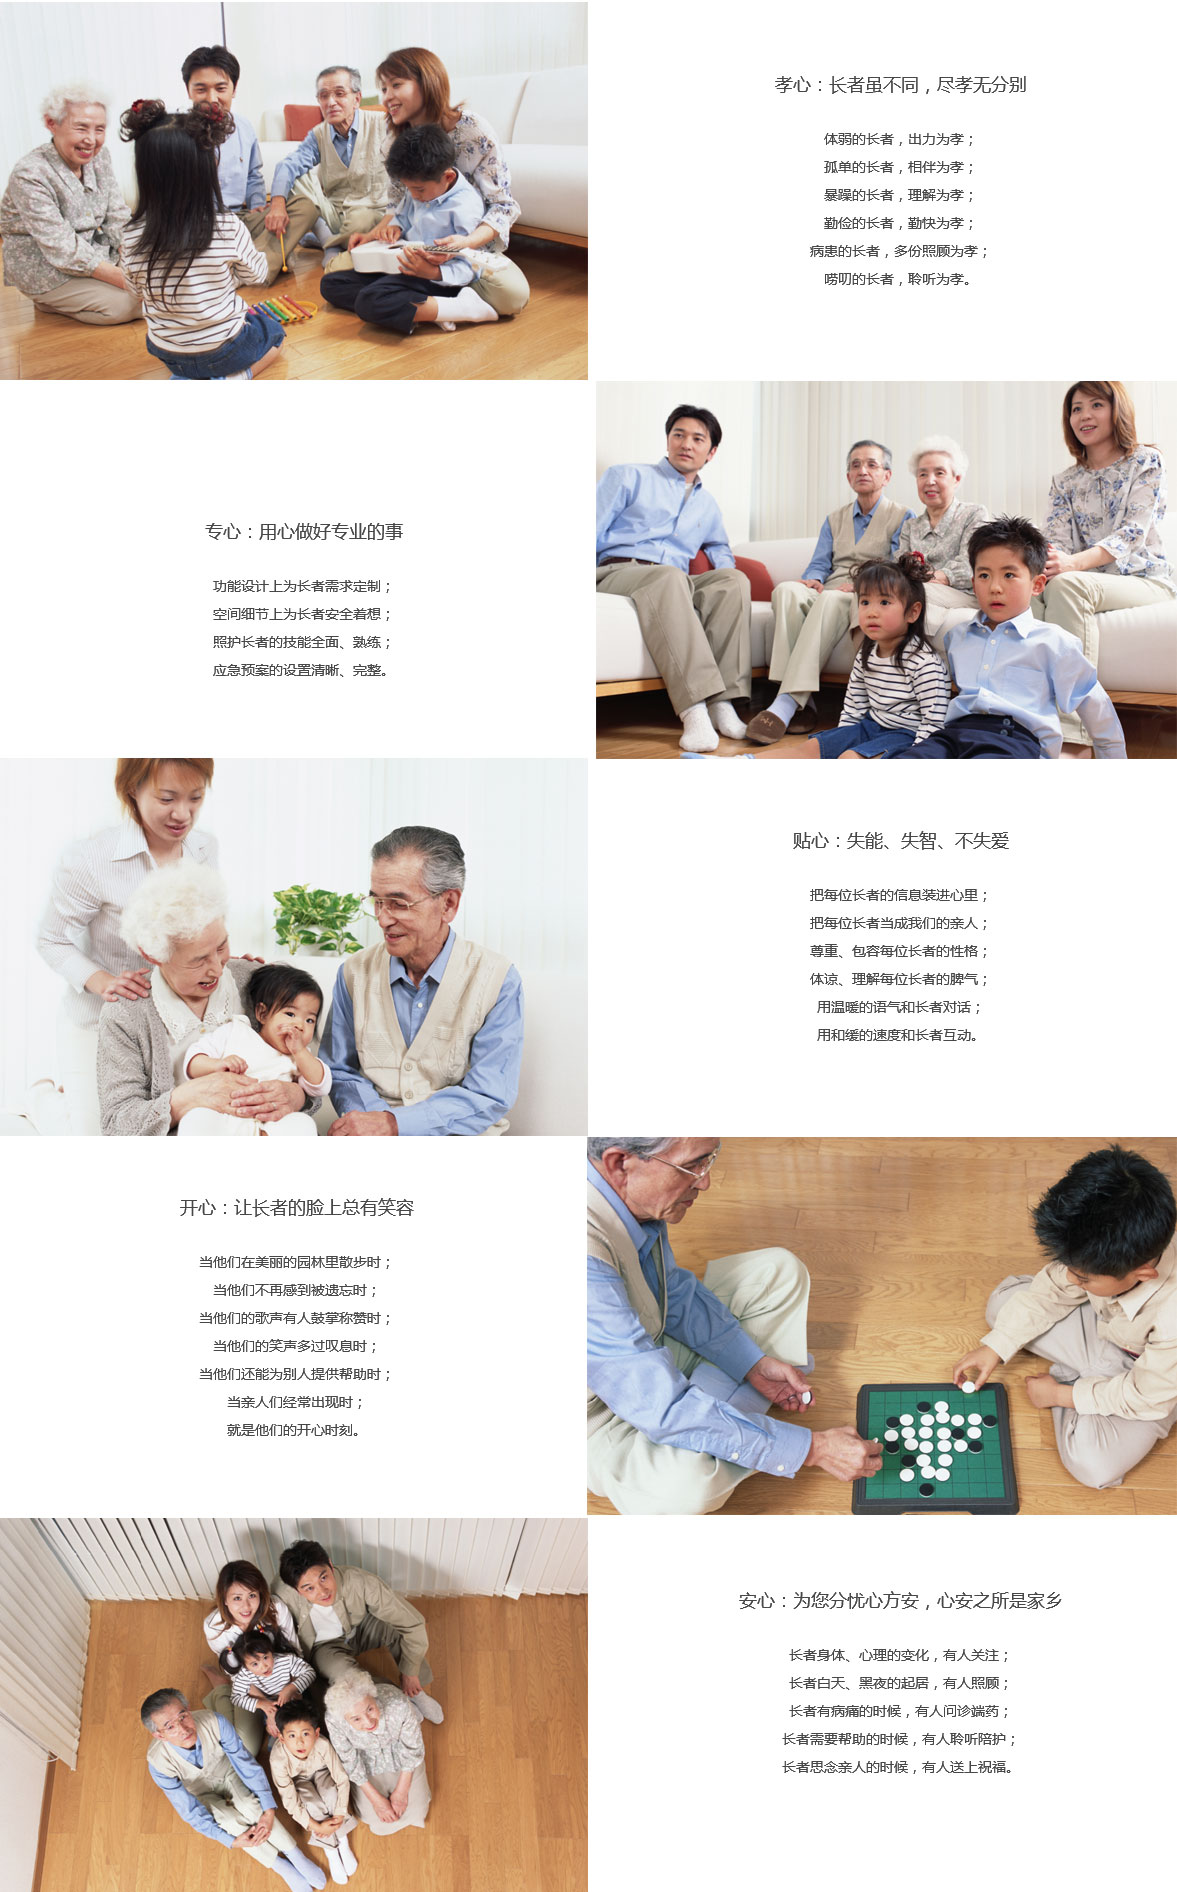 广州市可接收残障人士的养老院百悦百泰养老机构